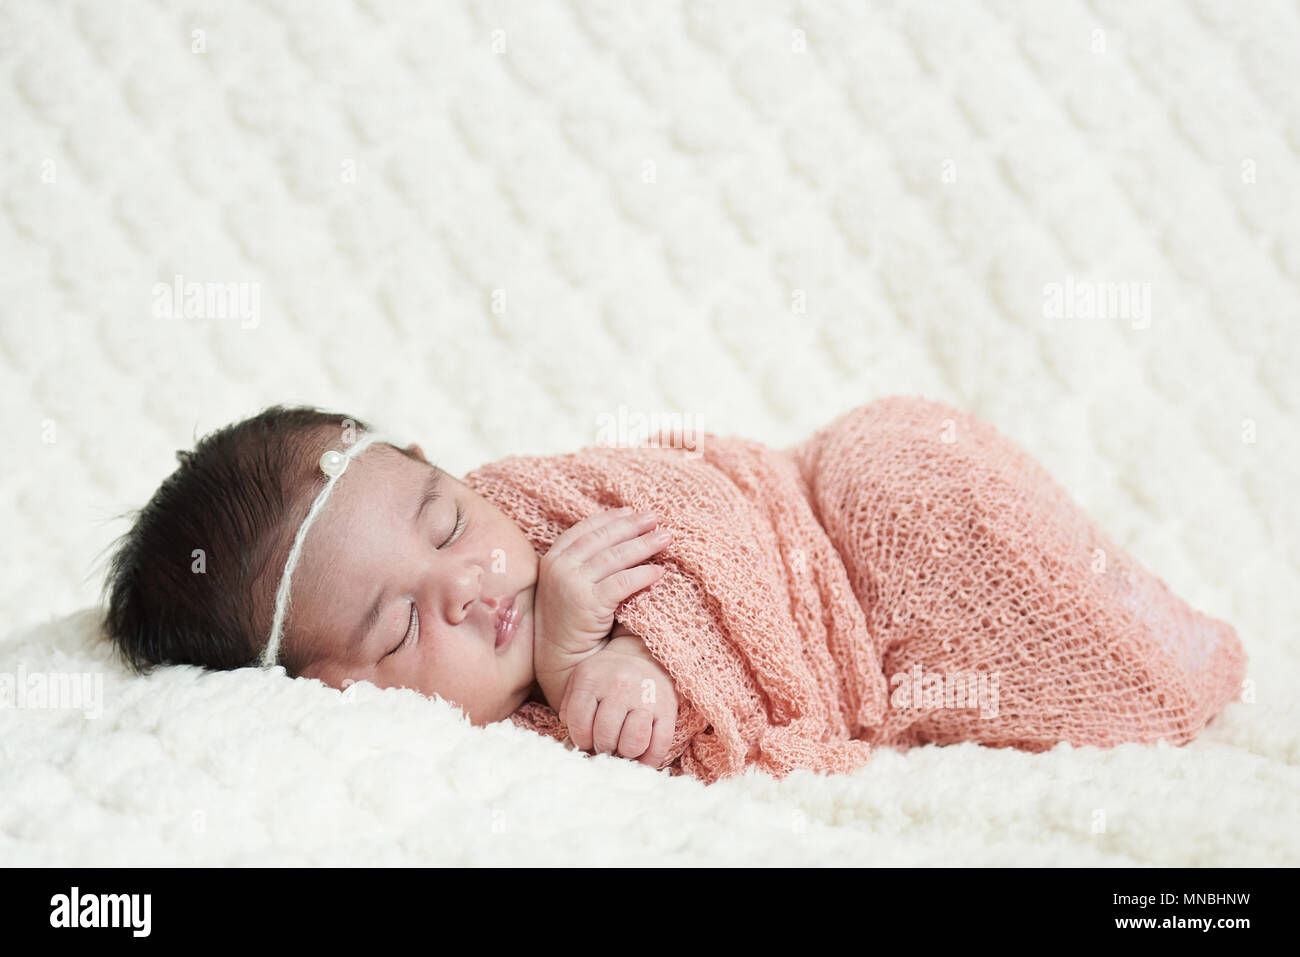 Cute Baby schlafen auf weiche, weiße Decke Hintergrund Stockfoto